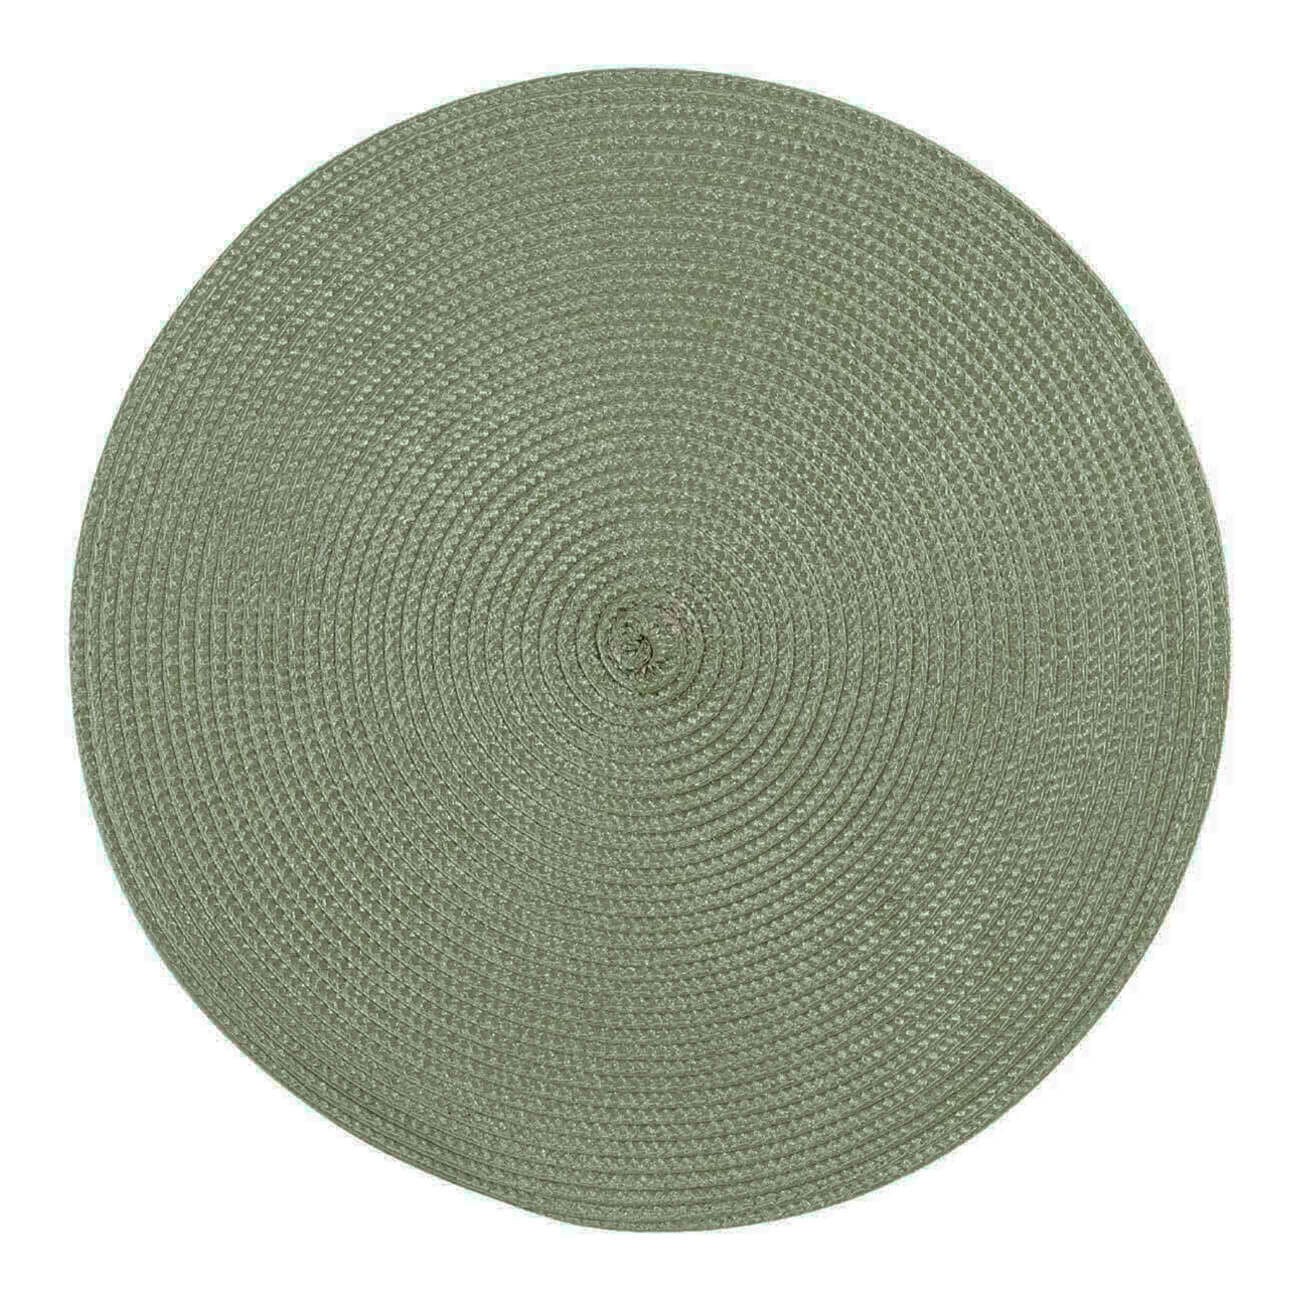 Салфетка под приборы, 38 см, полипропилен/ПЭТ, круглая, зеленая, Circle салфетка микрофибра raccoon